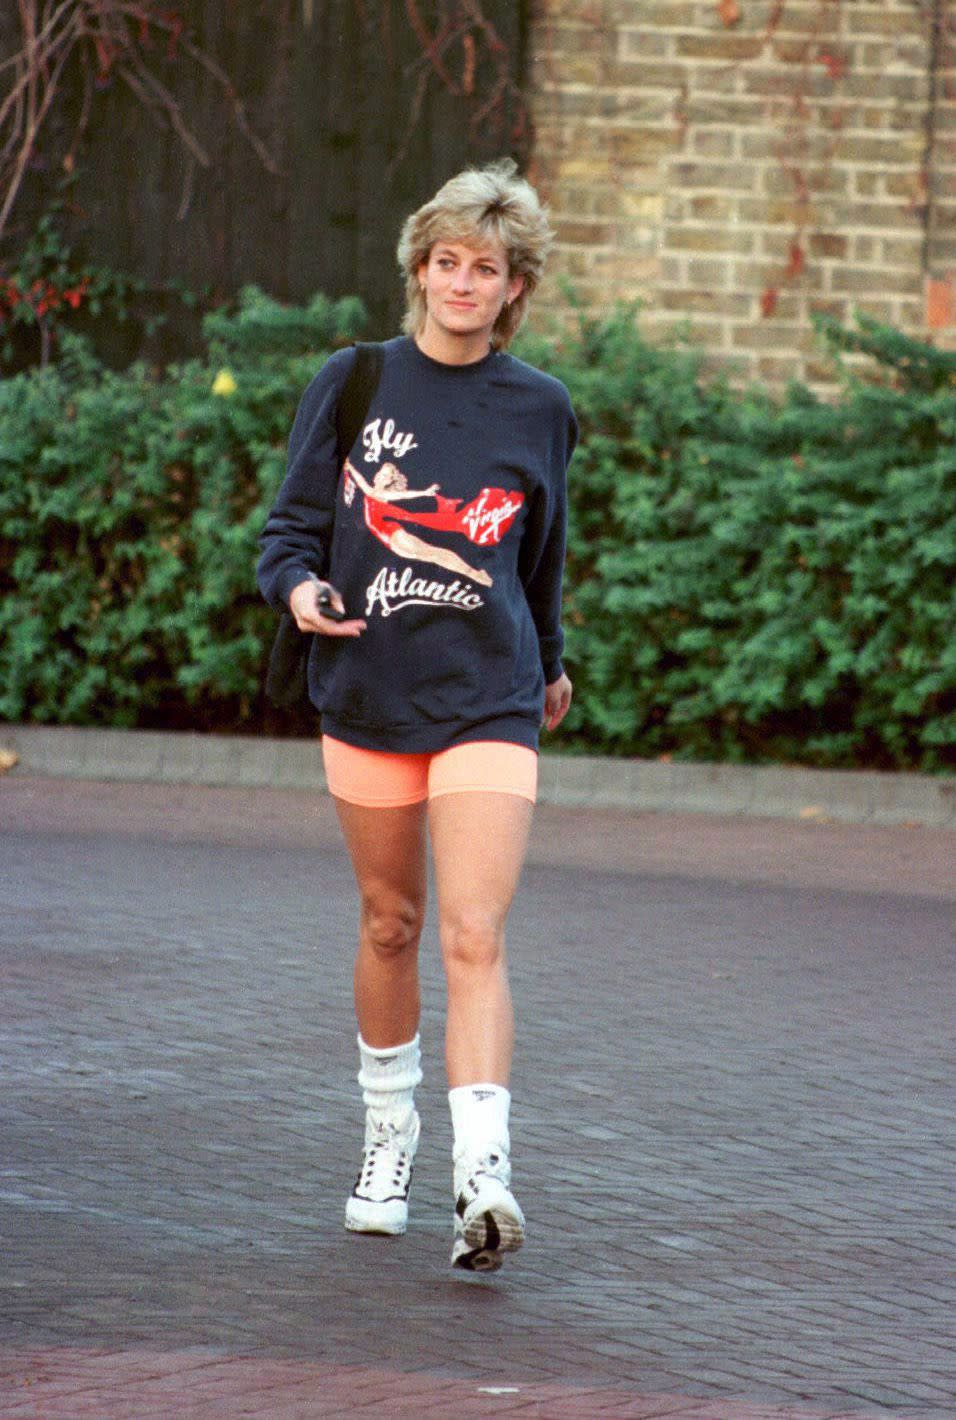 Princess Diana, 1995